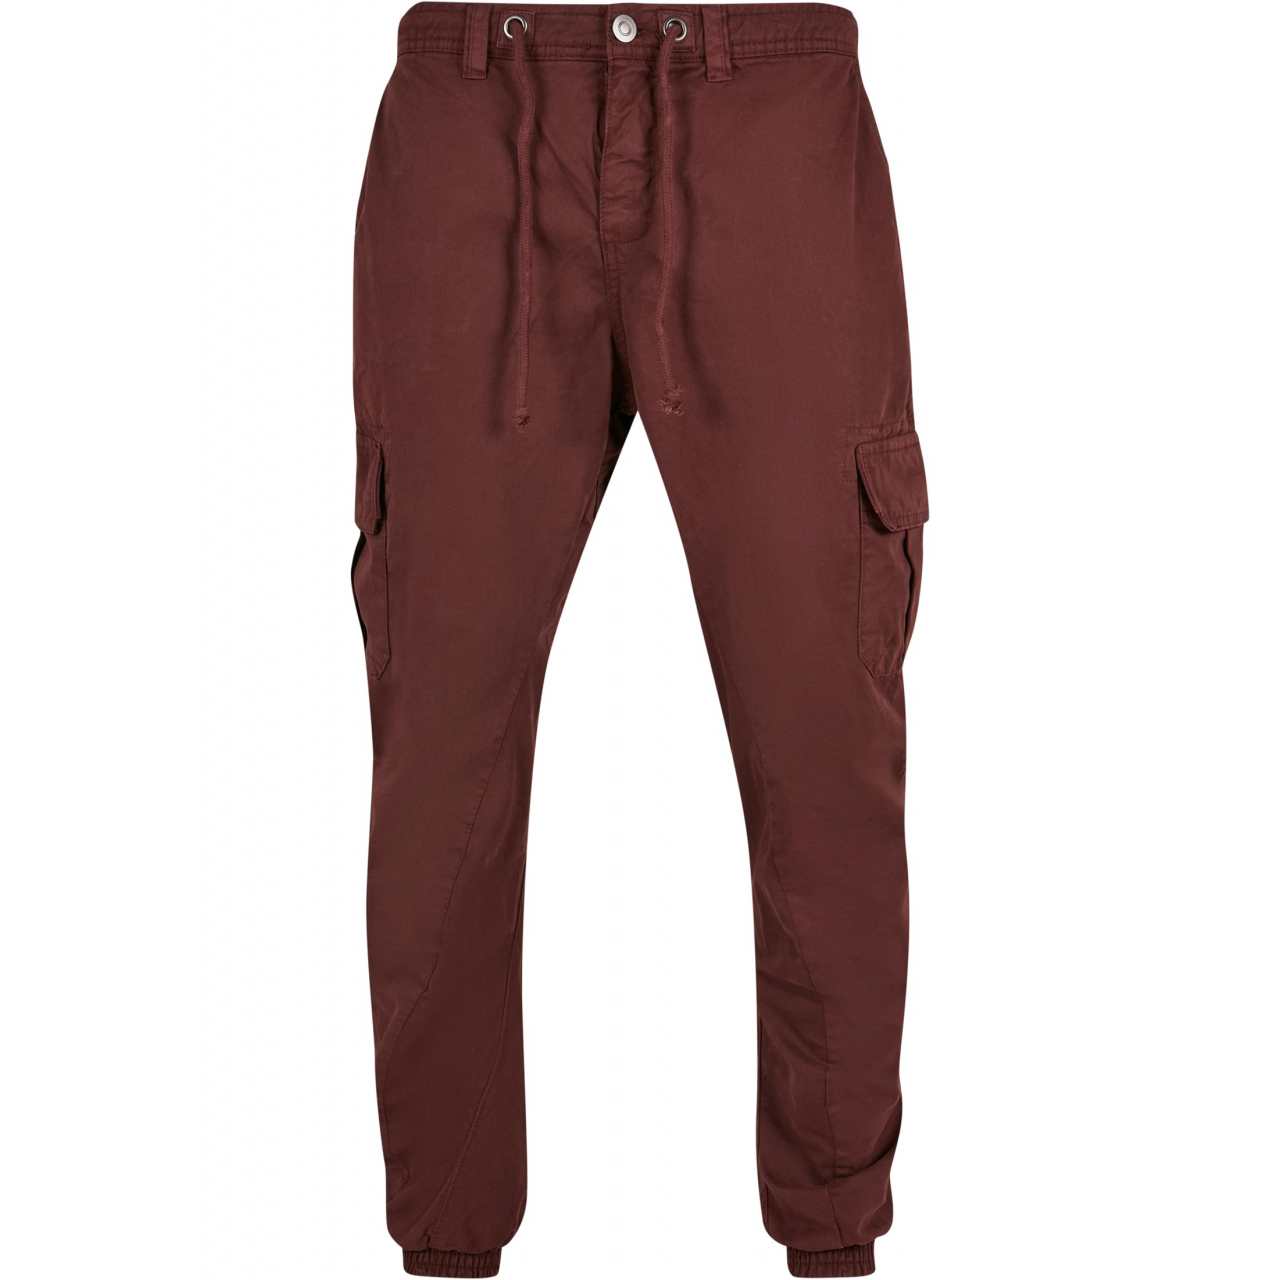 Kalhoty Urban Classics Cargo Jogging - tmavě červené, XL